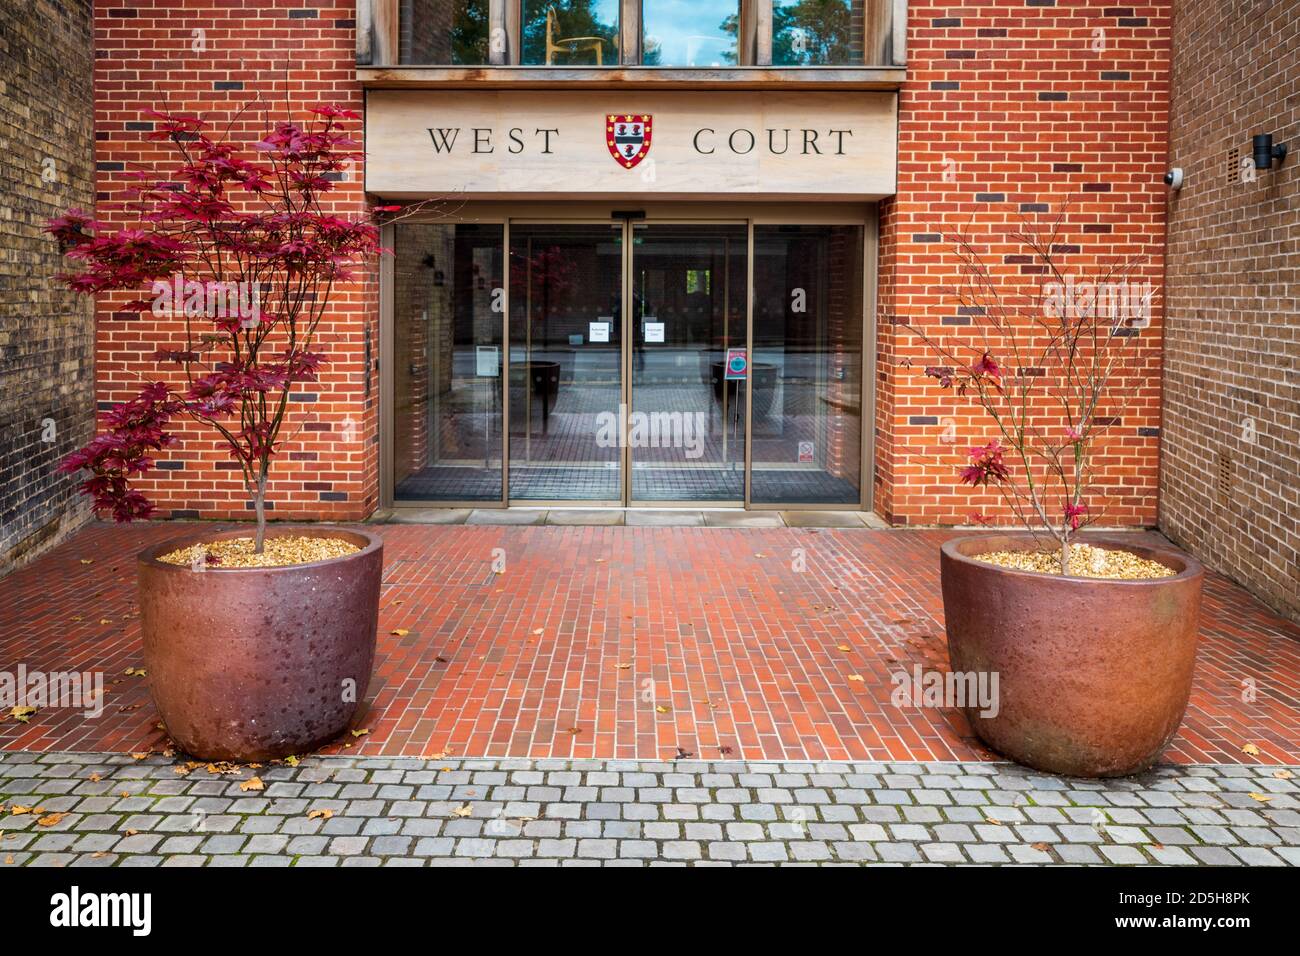 Jesus College West Court Cambridge - Eingang der neuen West Gericht Auditorium und Forum - Cambridge Architektur - Níall McLaughlin Architekten - 2017 Stockfoto